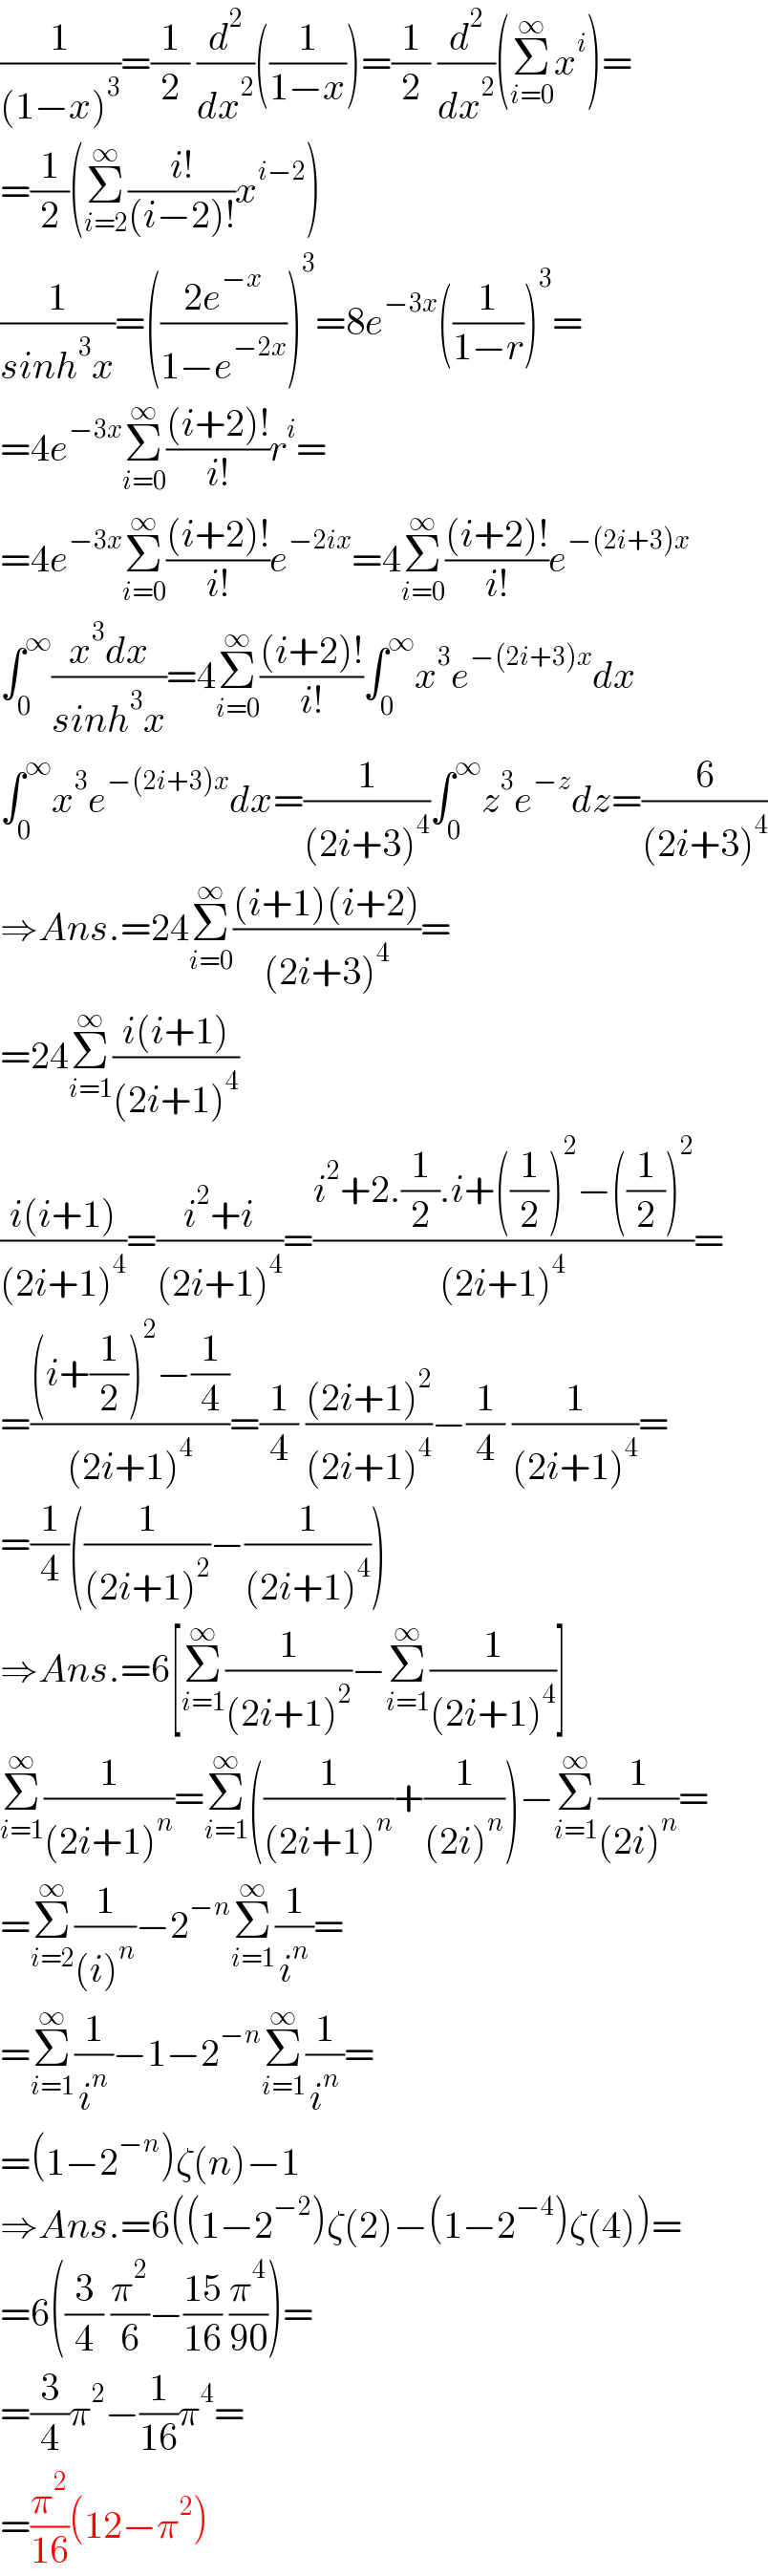 (1/((1−x)^3 ))=(1/2) (d^2 /dx^2 )((1/(1−x)))=(1/2) (d^2 /dx^2 )(Σ_(i=0) ^∞ x^i )=  =(1/2)(Σ_(i=2) ^∞ ((i!)/((i−2)!))x^(i−2) )  (1/(sinh^3 x))=(((2e^(−x) )/(1−e^(−2x) )))^3 =8e^(−3x) ((1/(1−r)))^3 =  =4e^(−3x) Σ_(i=0) ^∞ (((i+2)!)/(i!))r^i =  =4e^(−3x) Σ_(i=0) ^∞ (((i+2)!)/(i!))e^(−2ix) =4Σ_(i=0) ^∞ (((i+2)!)/(i!))e^(−(2i+3)x)   ∫_0 ^∞ ((x^3 dx)/(sinh^3 x))=4Σ_(i=0) ^∞ (((i+2)!)/(i!))∫_0 ^∞ x^3 e^(−(2i+3)x) dx  ∫_0 ^∞ x^3 e^(−(2i+3)x) dx=(1/((2i+3)^4 ))∫_0 ^∞ z^3 e^(−z) dz=(6/((2i+3)^4 ))  ⇒Ans.=24Σ_(i=0) ^∞ (((i+1)(i+2))/((2i+3)^4 ))=  =24Σ_(i=1) ^∞ ((i(i+1))/((2i+1)^4 ))  ((i(i+1))/((2i+1)^4 ))=((i^2 +i)/((2i+1)^4 ))=((i^2 +2.(1/2).i+((1/2))^2 −((1/2))^2 )/((2i+1)^4 ))=  =(((i+(1/2))^2 −(1/4))/((2i+1)^4 ))=(1/4) (((2i+1)^2 )/((2i+1)^4 ))−(1/4) (1/((2i+1)^4 ))=  =(1/4)((1/((2i+1)^2 ))−(1/((2i+1)^4 )))  ⇒Ans.=6[Σ_(i=1) ^∞ (1/((2i+1)^2 ))−Σ_(i=1) ^∞ (1/((2i+1)^4 ))]  Σ_(i=1) ^∞ (1/((2i+1)^n ))=Σ_(i=1) ^∞ ((1/((2i+1)^n ))+(1/((2i)^n )))−Σ_(i=1) ^∞ (1/((2i)^n ))=  =Σ_(i=2) ^∞ (1/((i)^n ))−2^(−n) Σ_(i=1) ^∞ (1/i^n )=  =Σ_(i=1) ^∞ (1/i^n )−1−2^(−n) Σ_(i=1) ^∞ (1/i^n )=  =(1−2^(−n) )ζ(n)−1  ⇒Ans.=6((1−2^(−2) )ζ(2)−(1−2^(−4) )ζ(4))=  =6((3/4) (π^2 /6)−((15)/(16)) (π^4 /(90)))=  =(3/4)π^2 −(1/(16))π^4 =  =(π^2 /(16))(12−π^2 )  